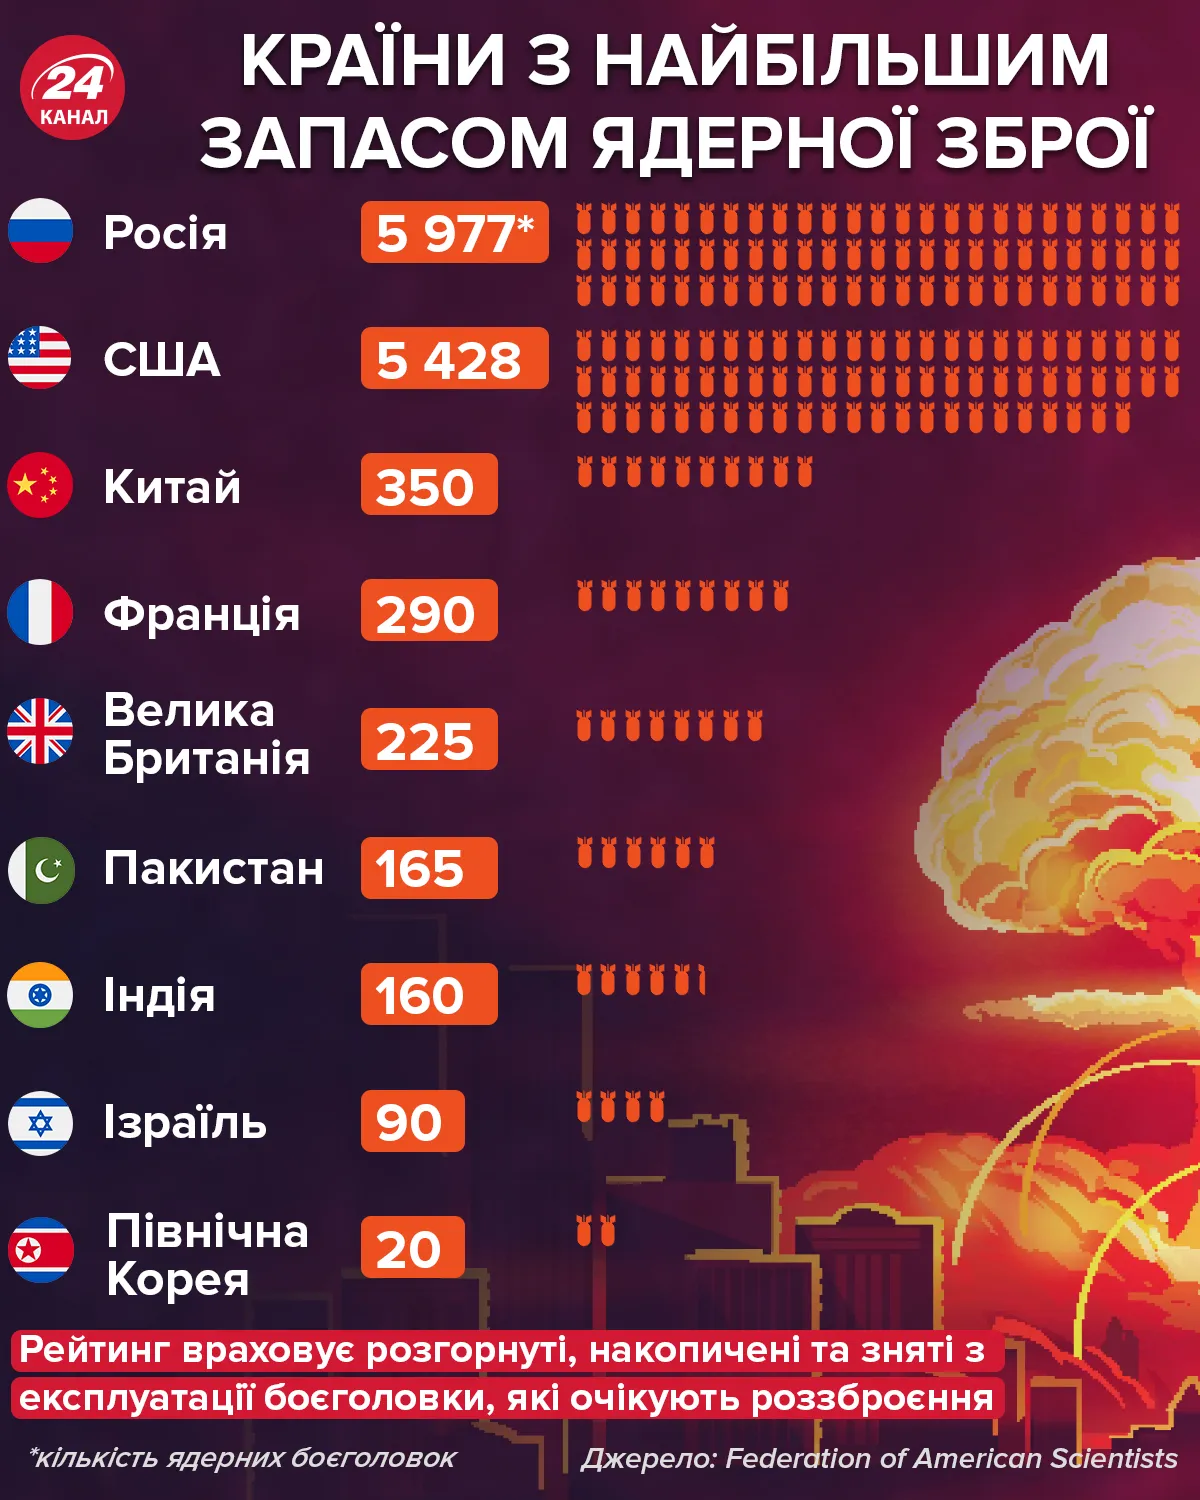 Ядерна зброя: в яких країнах найбільше